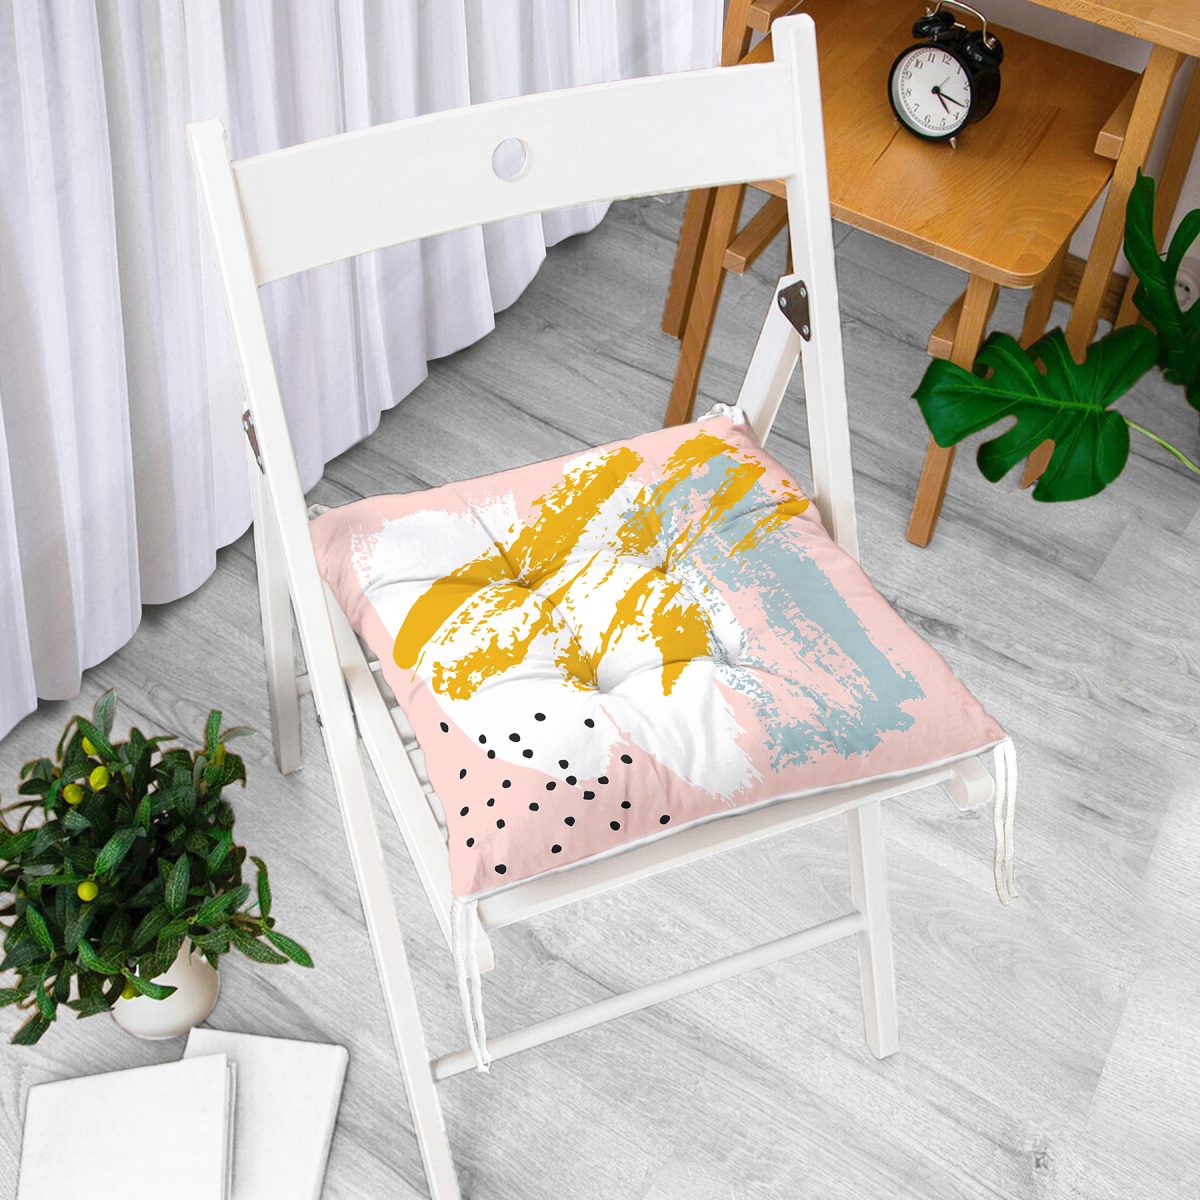 Pembe Zemin Üzerinde Sulu Boya Beyaz Ve Mavi Çizimli Özel Tasarım Pofuduk Sandalye Minderi Realhomes